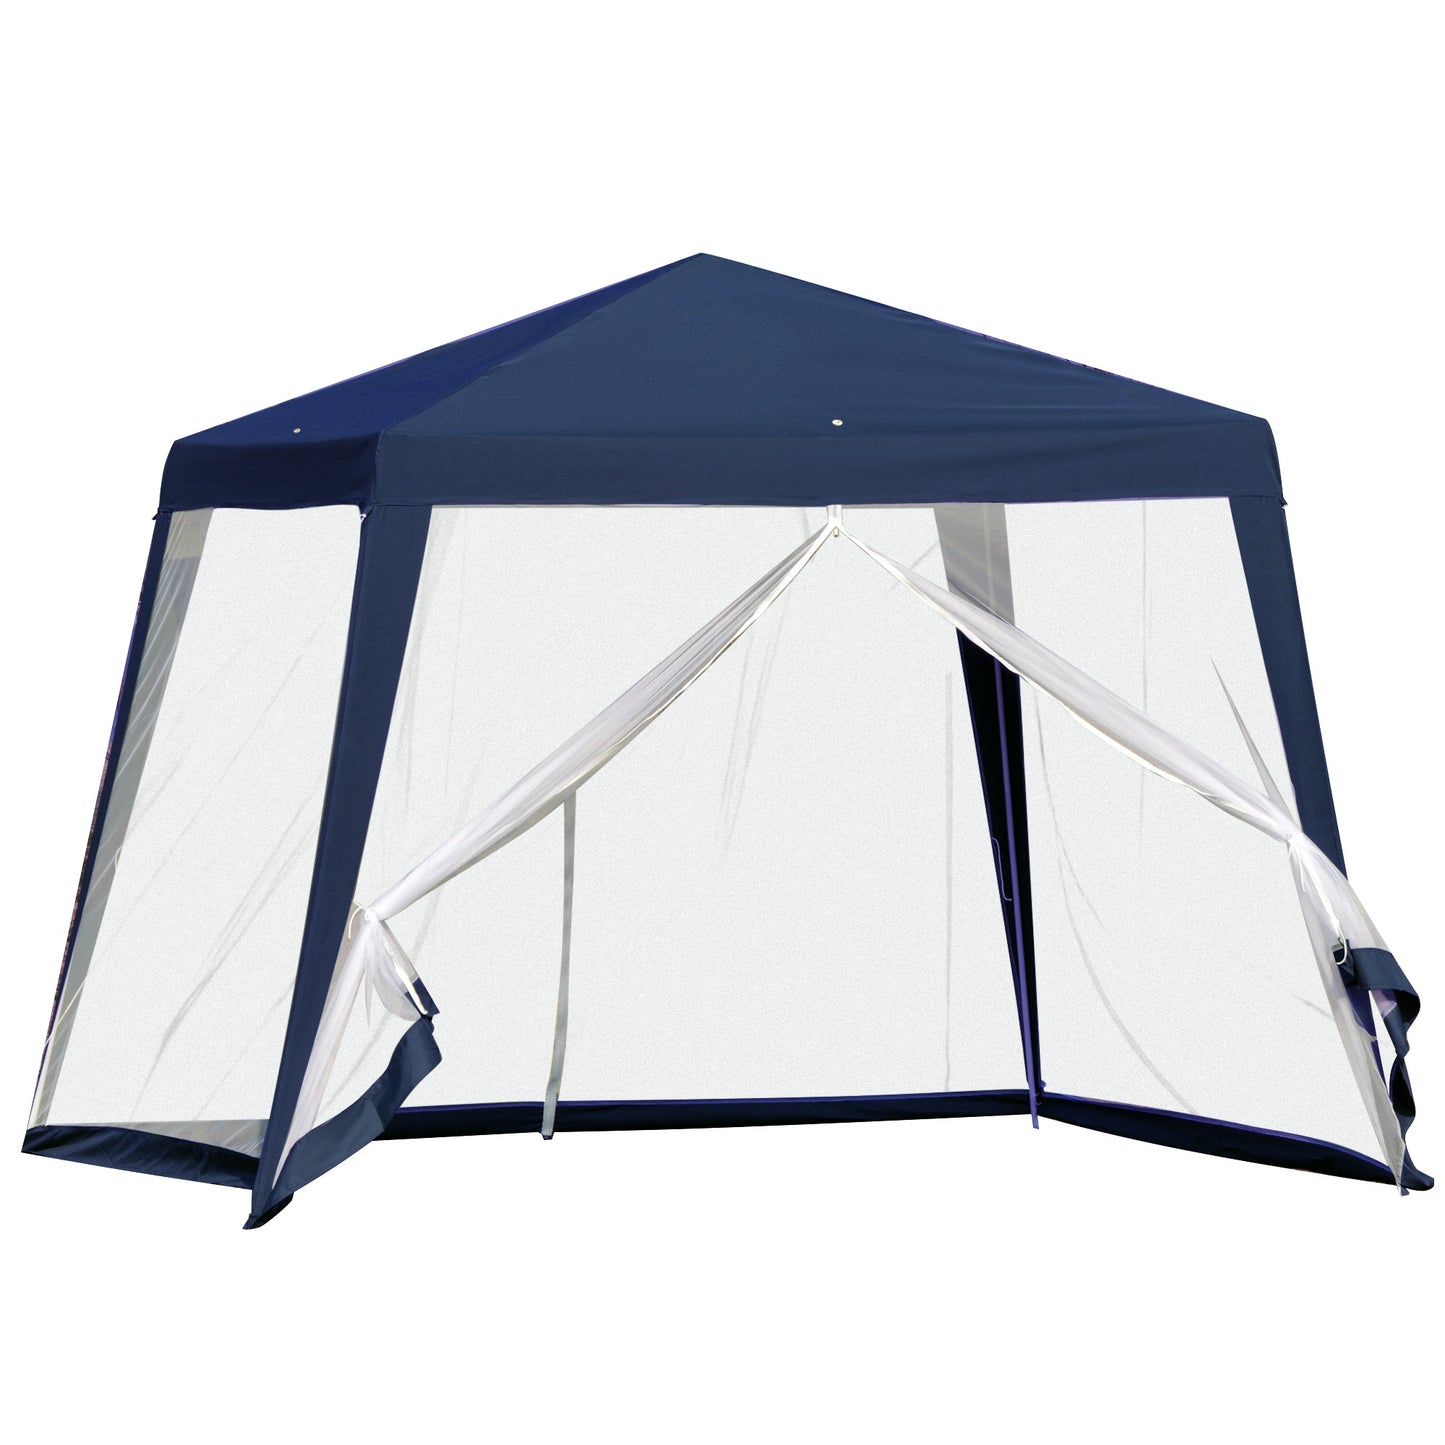 Nancy's Cedar Rapids Garden Pavilion - Party Tent - With Mosquito Net - Polyester - Blue - 300 x 300 cm